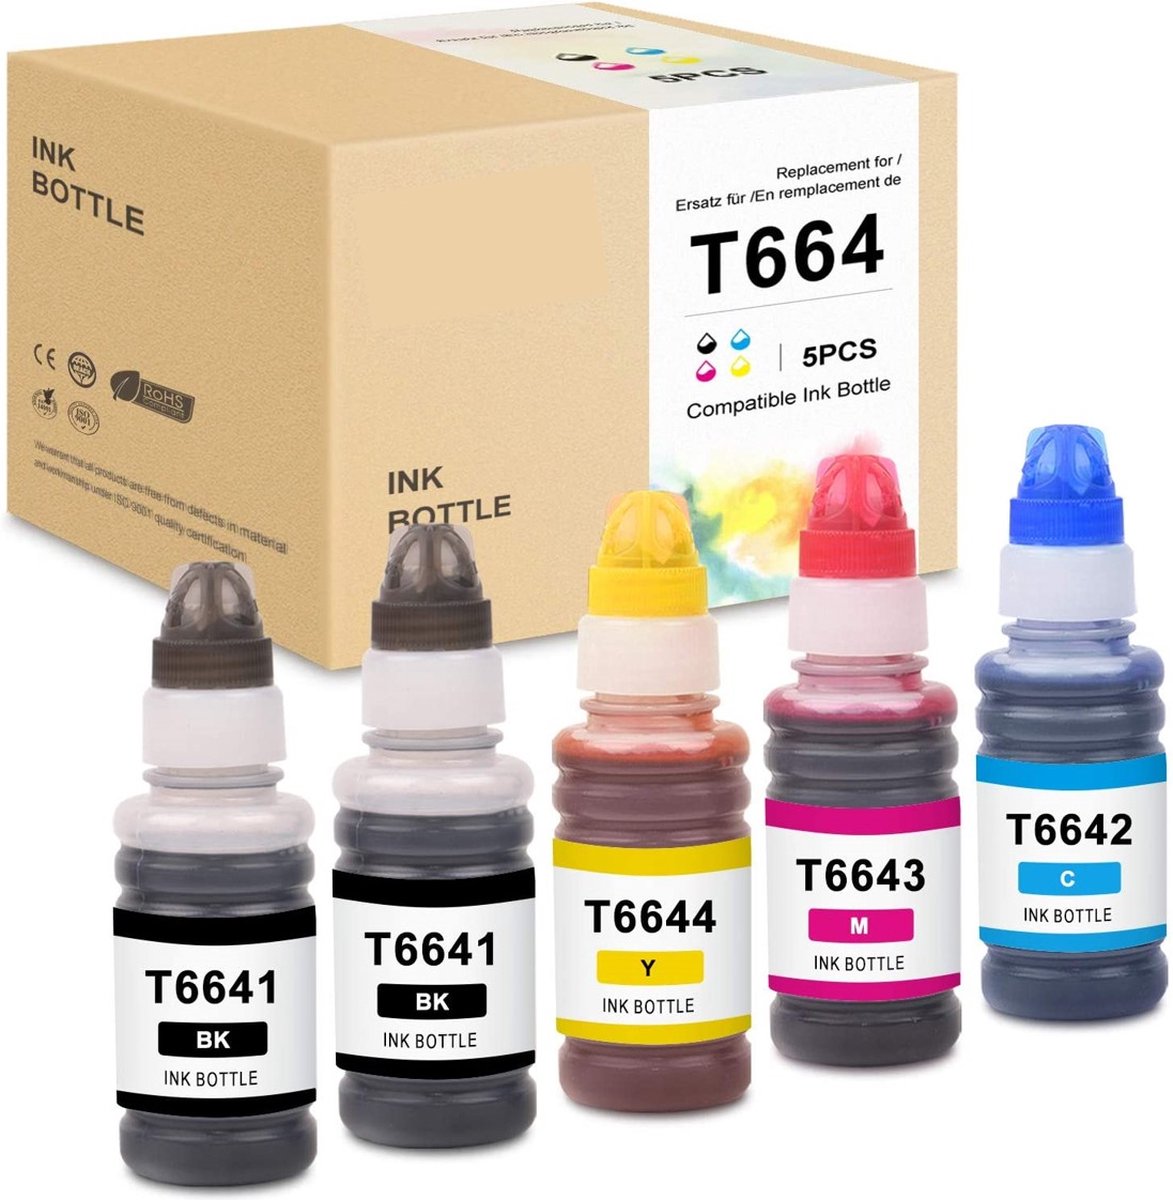 G&G 664 inkt compatibele voor Epson 664 T6641-T6644 EcoTank multipack- 2 Zwart 1 cyaan 1 magenta 1 geel